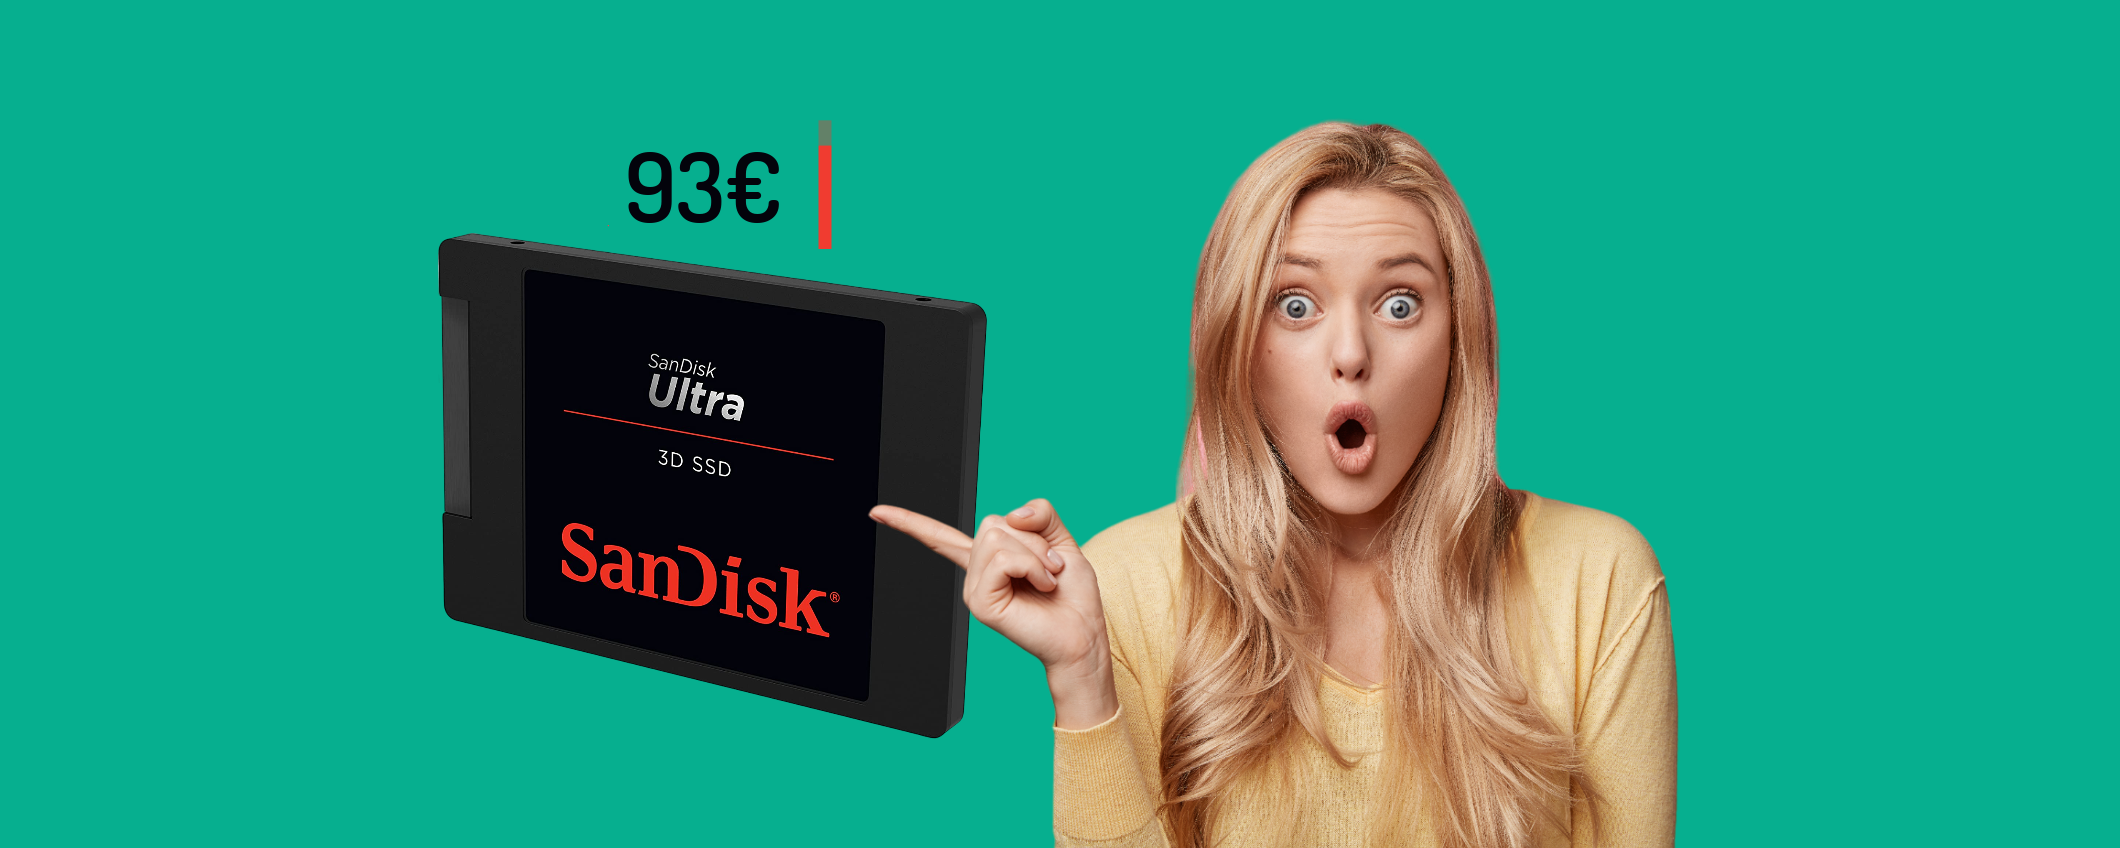 SSD SanDisk 1TB: il prezzo PRECIPITA sotto i 100€, è un AFFARE